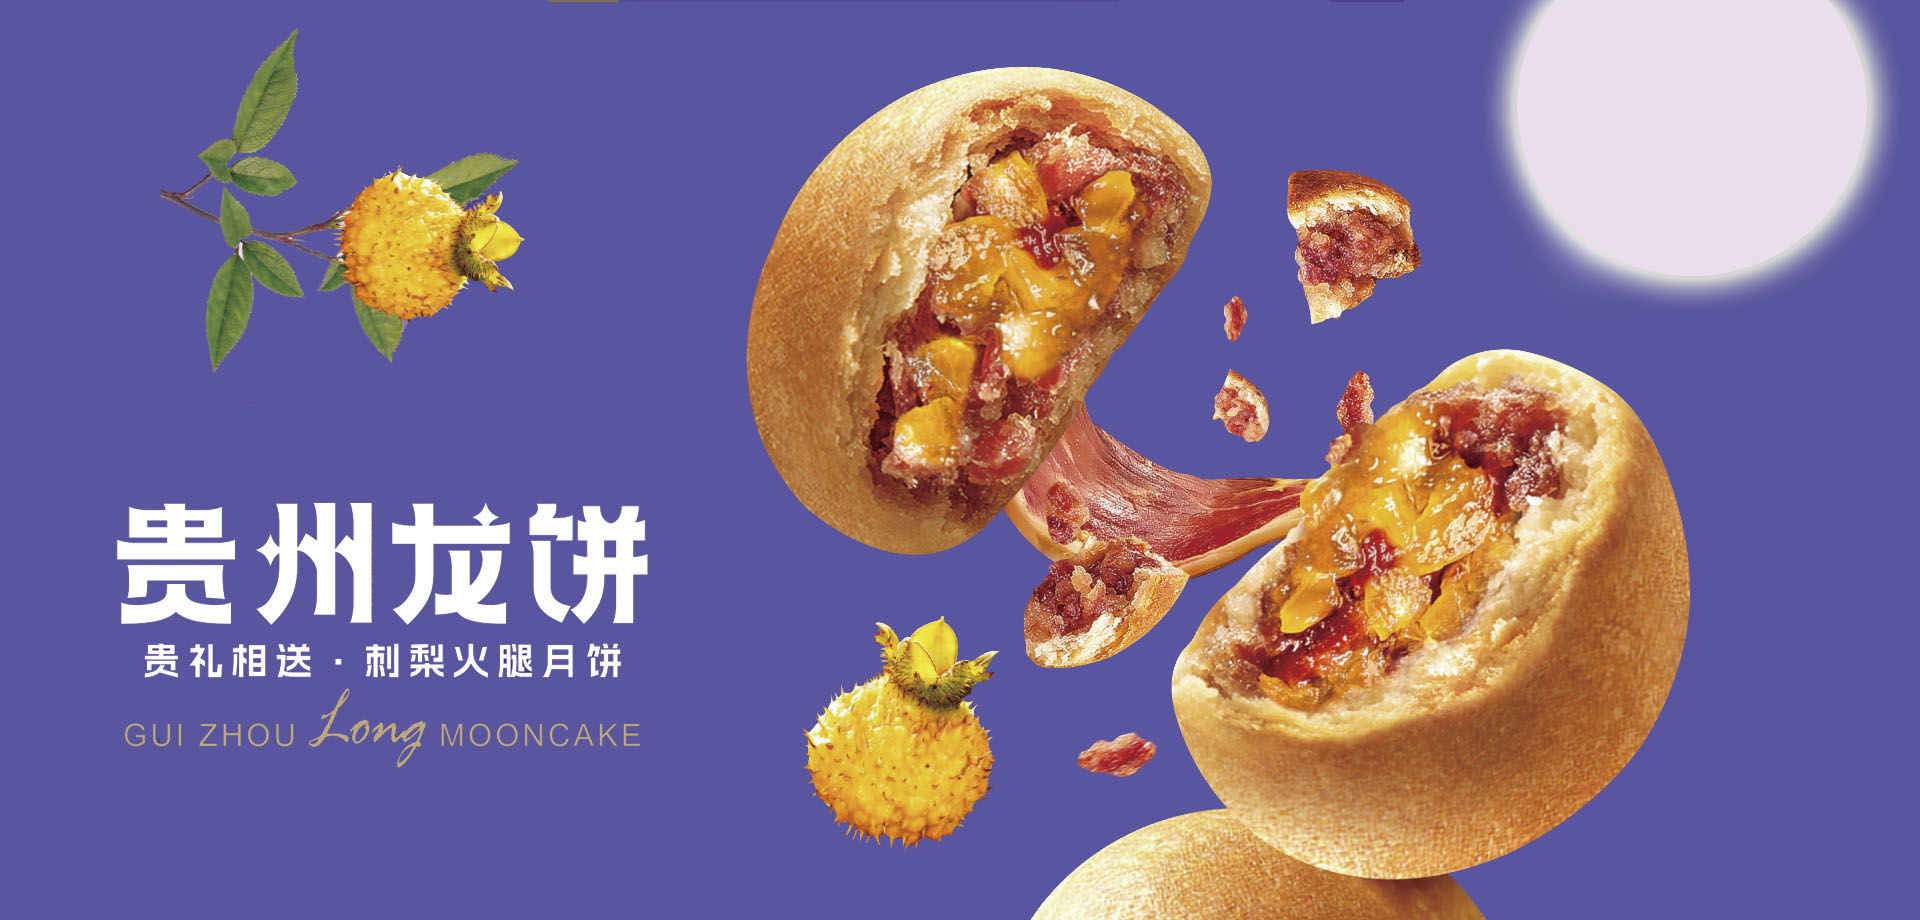 贵州龙月饼